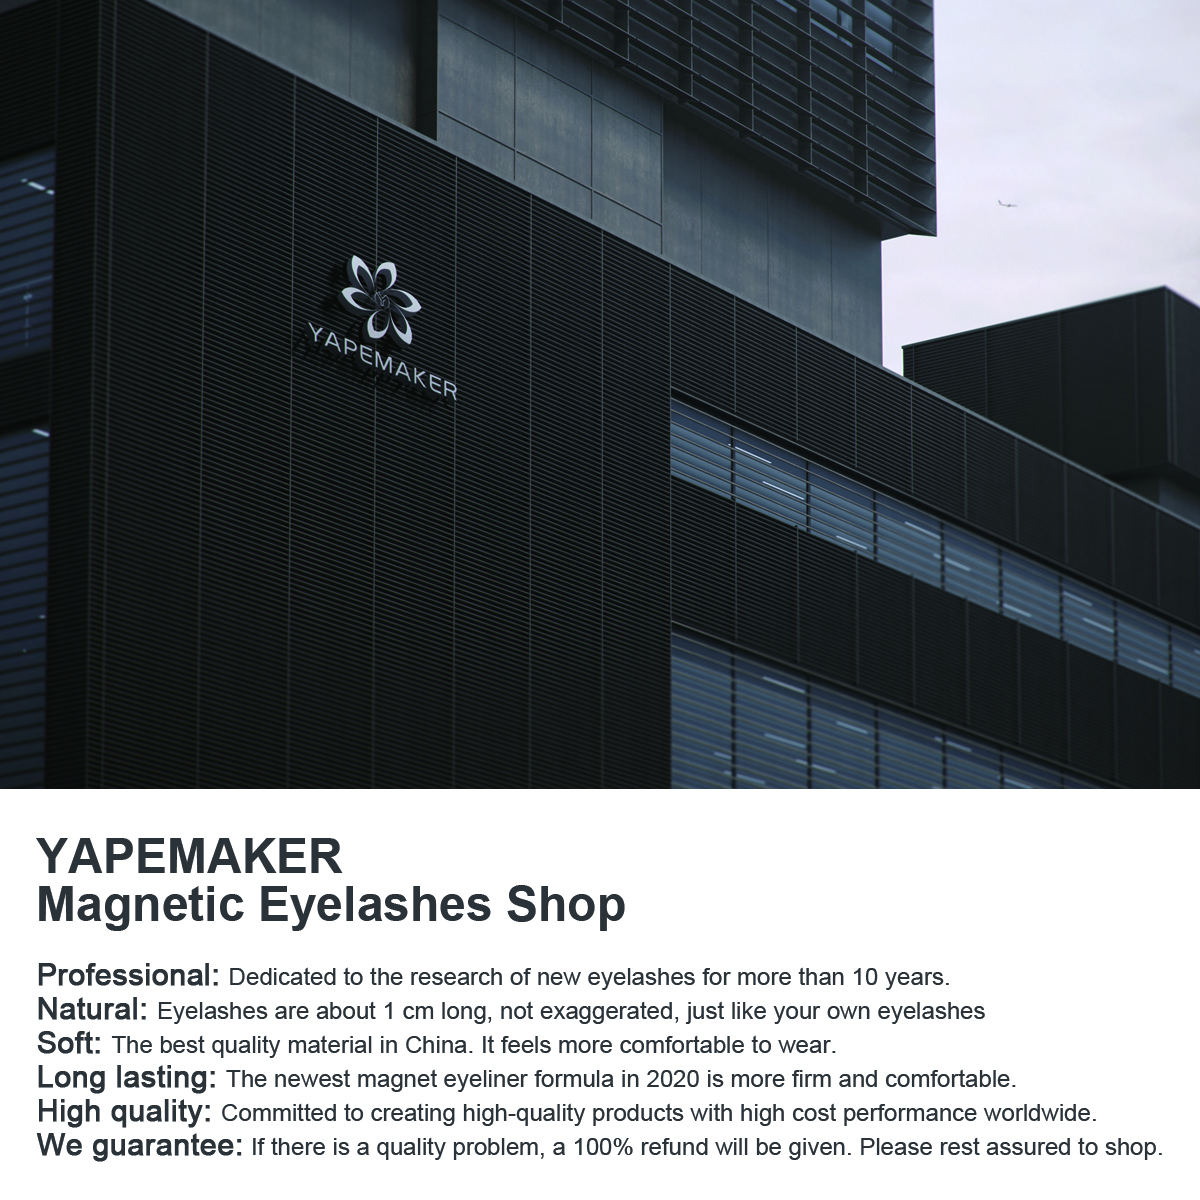 Magnetic Eyelashes 3D Mink Eyelashes Magnetic Eyeliner Magnetic Lashes Short False Lashes Lasting Handmade Eyelash Makeup Tool